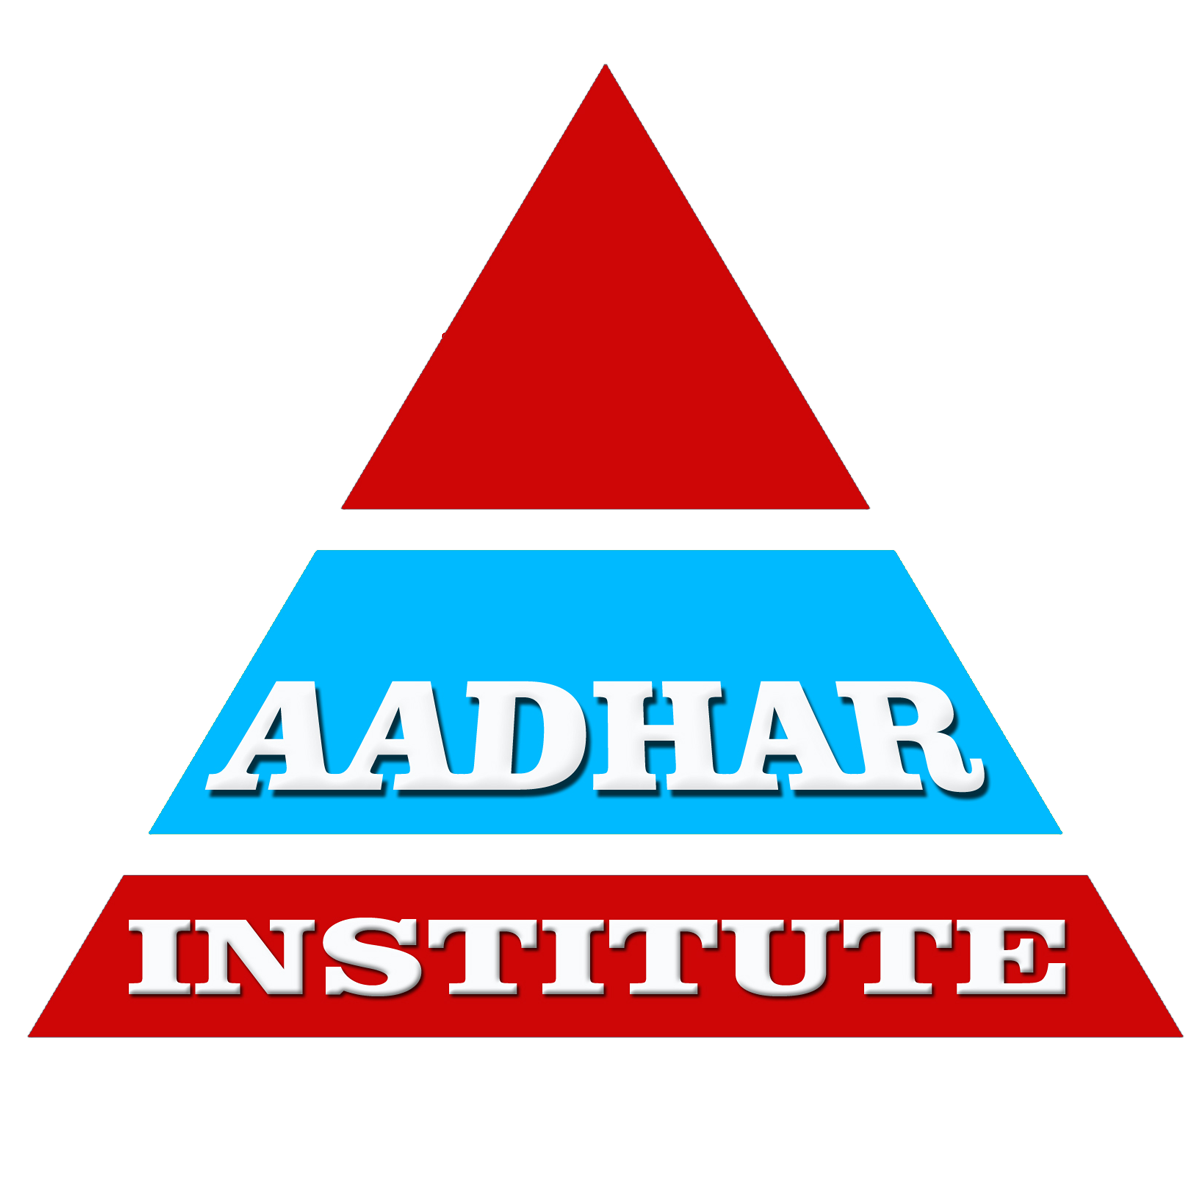 Aadhar Institute - Logo